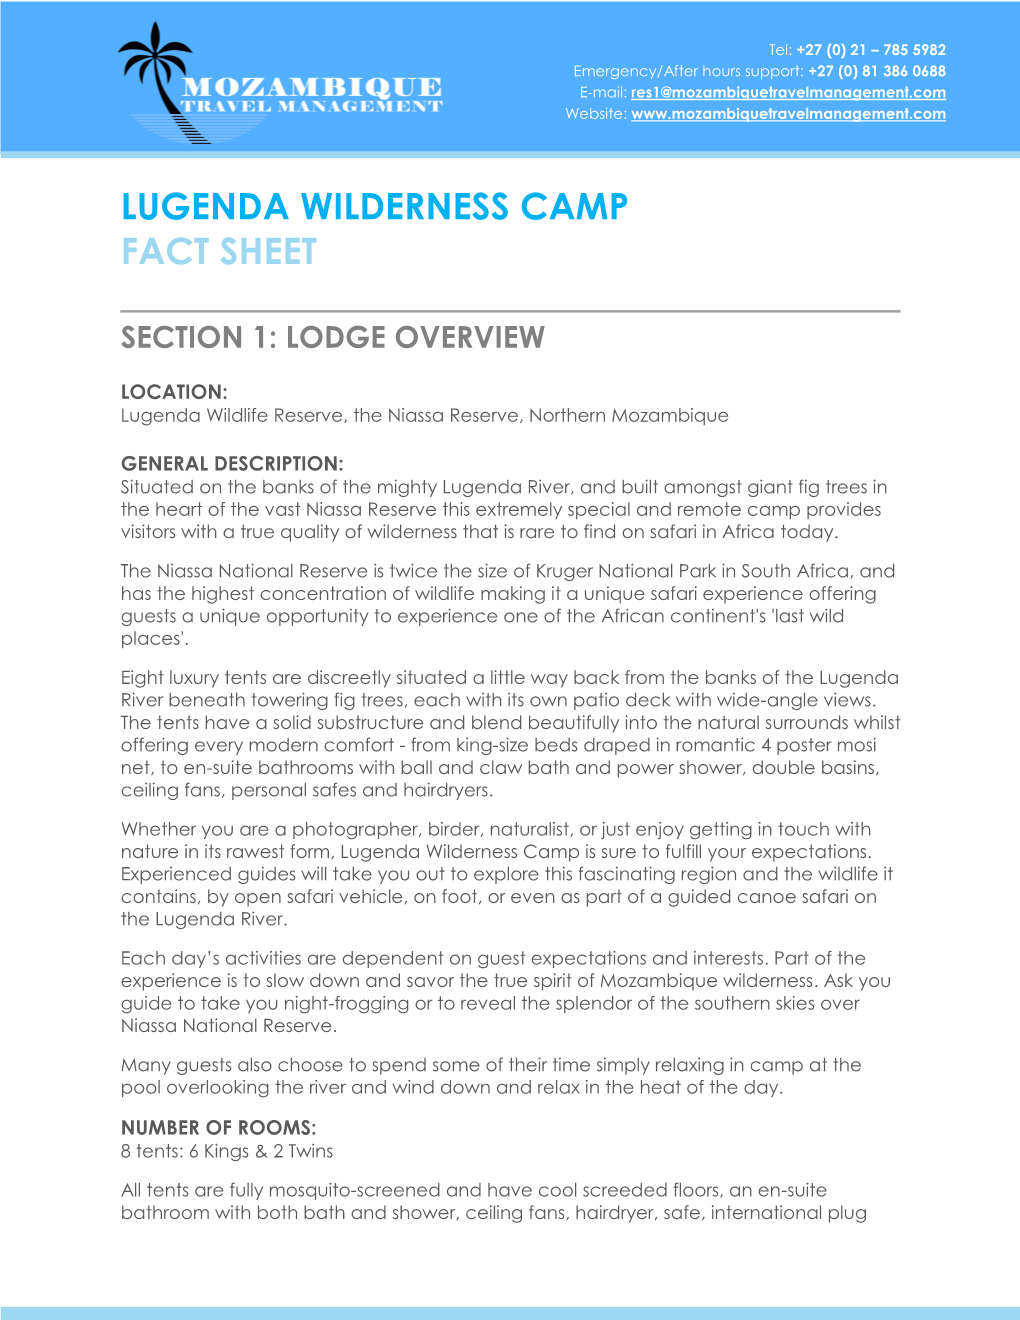 Lugenda Wilderness Camp Fact Sheet